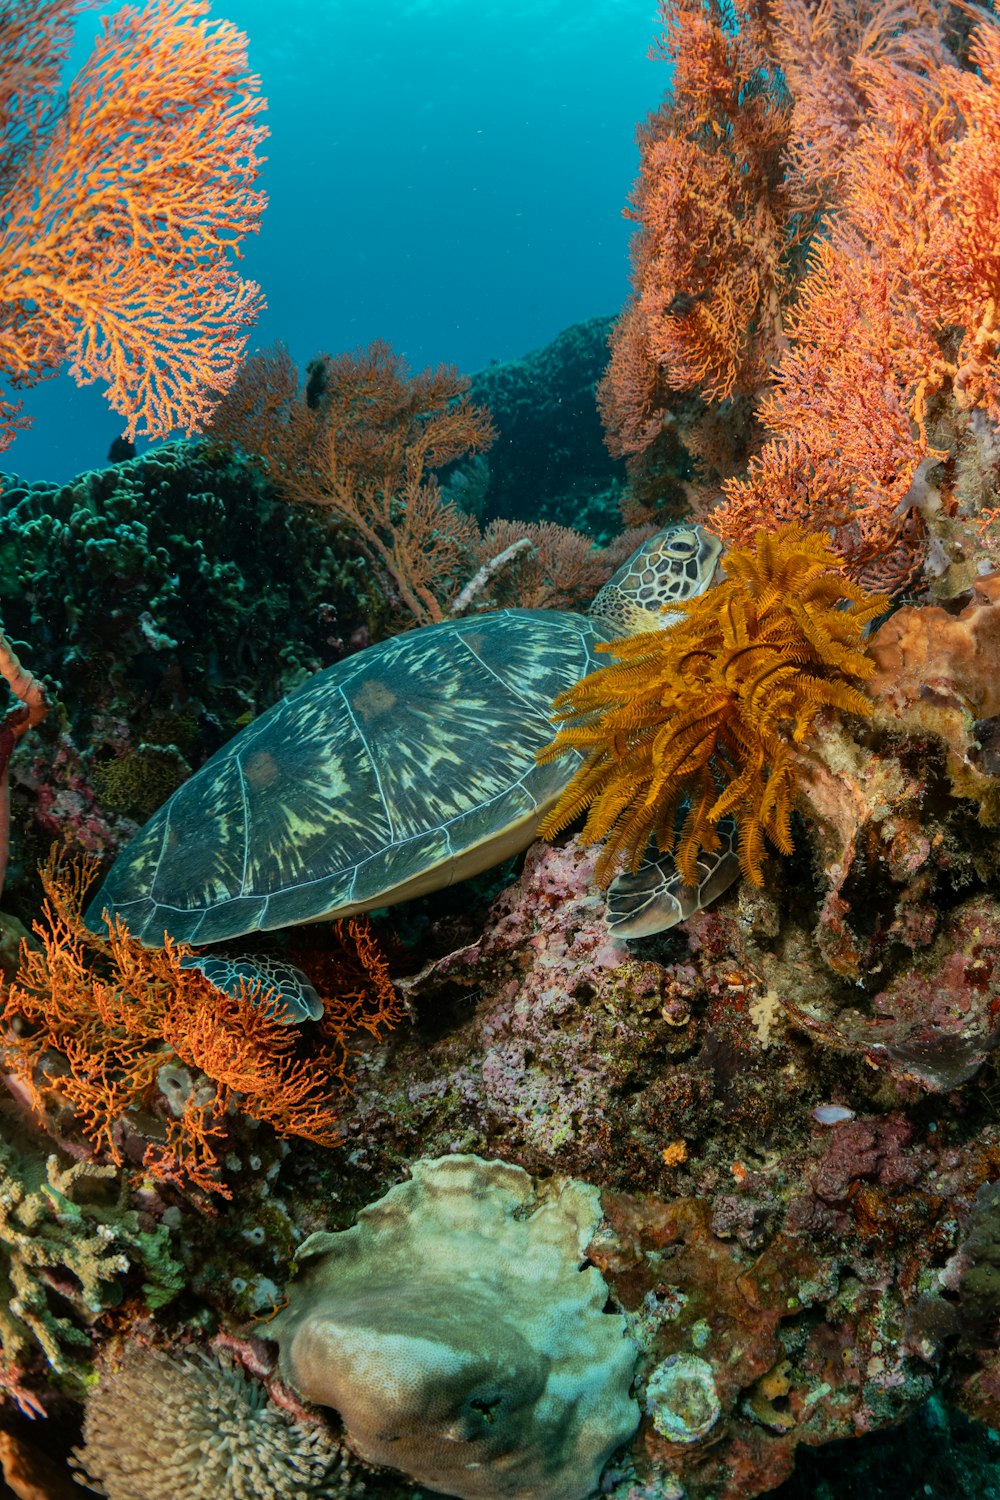 형형색색의 산호초 위를 헤엄치는 거북이